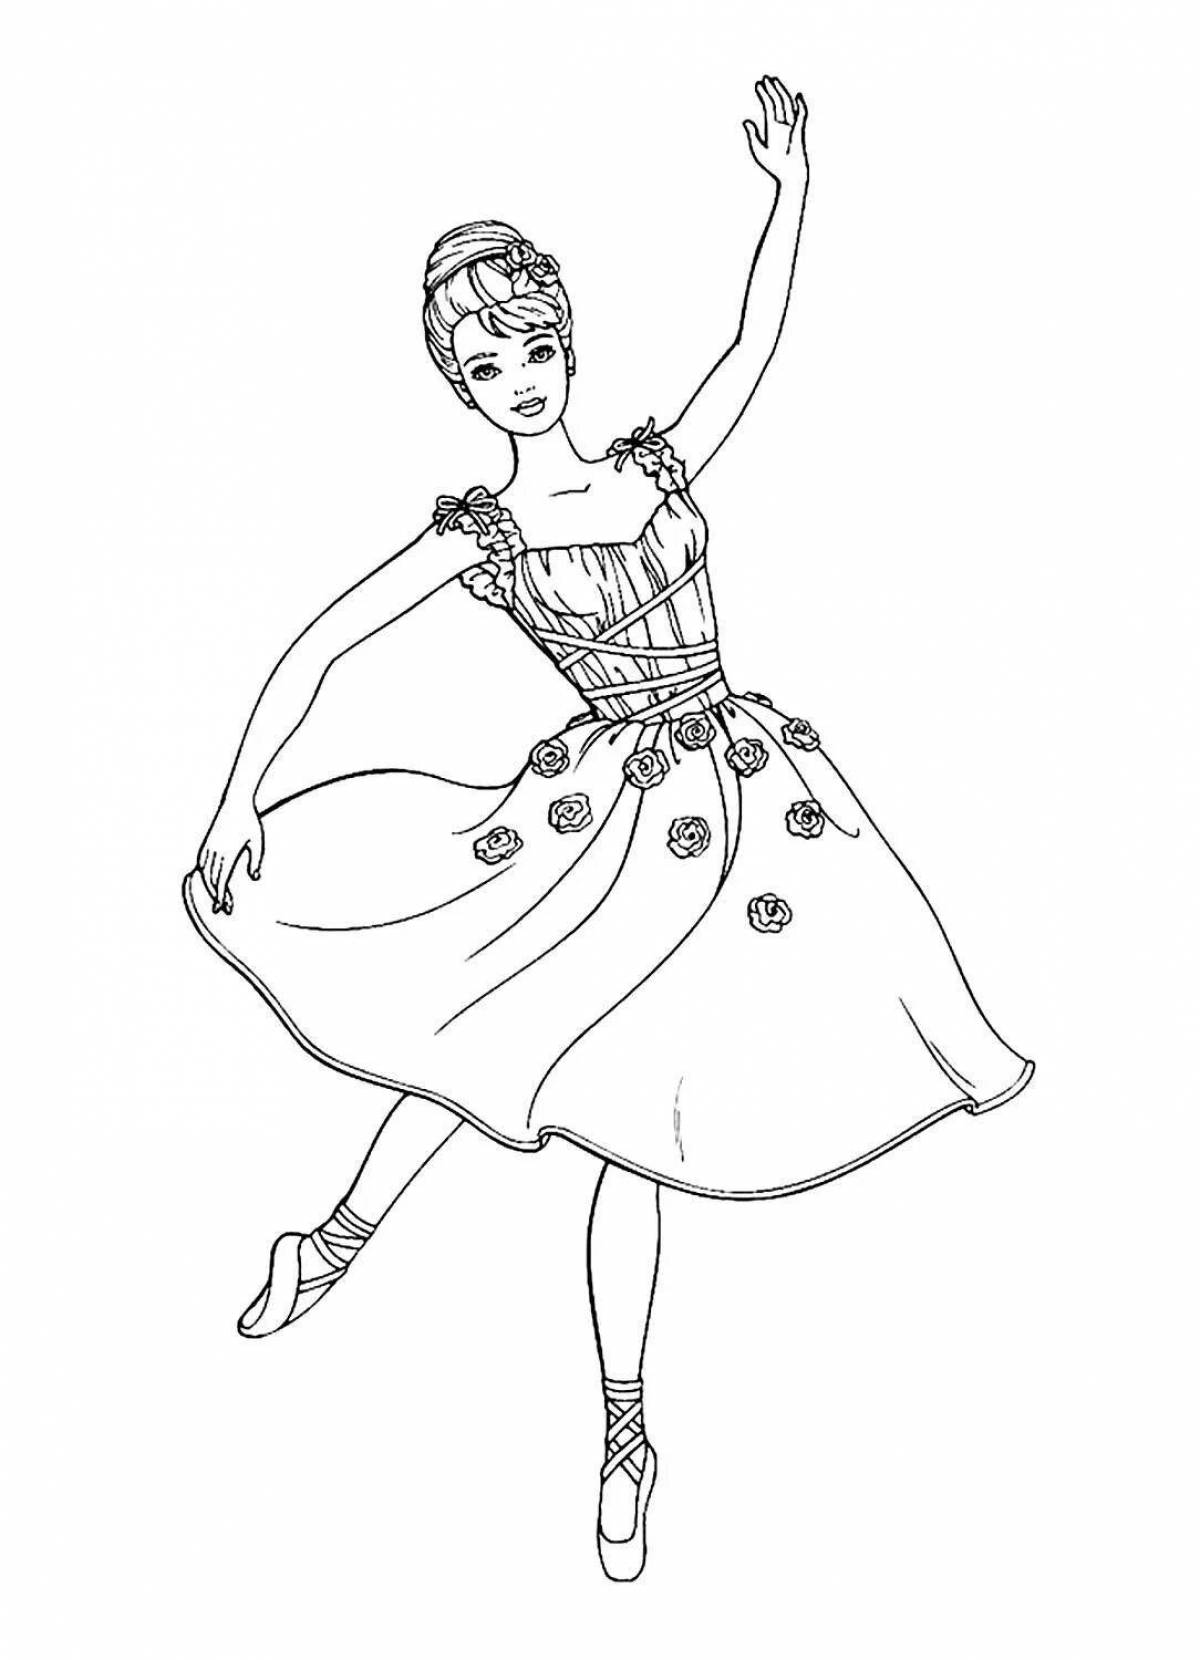 Joyful coloring princess ballerina